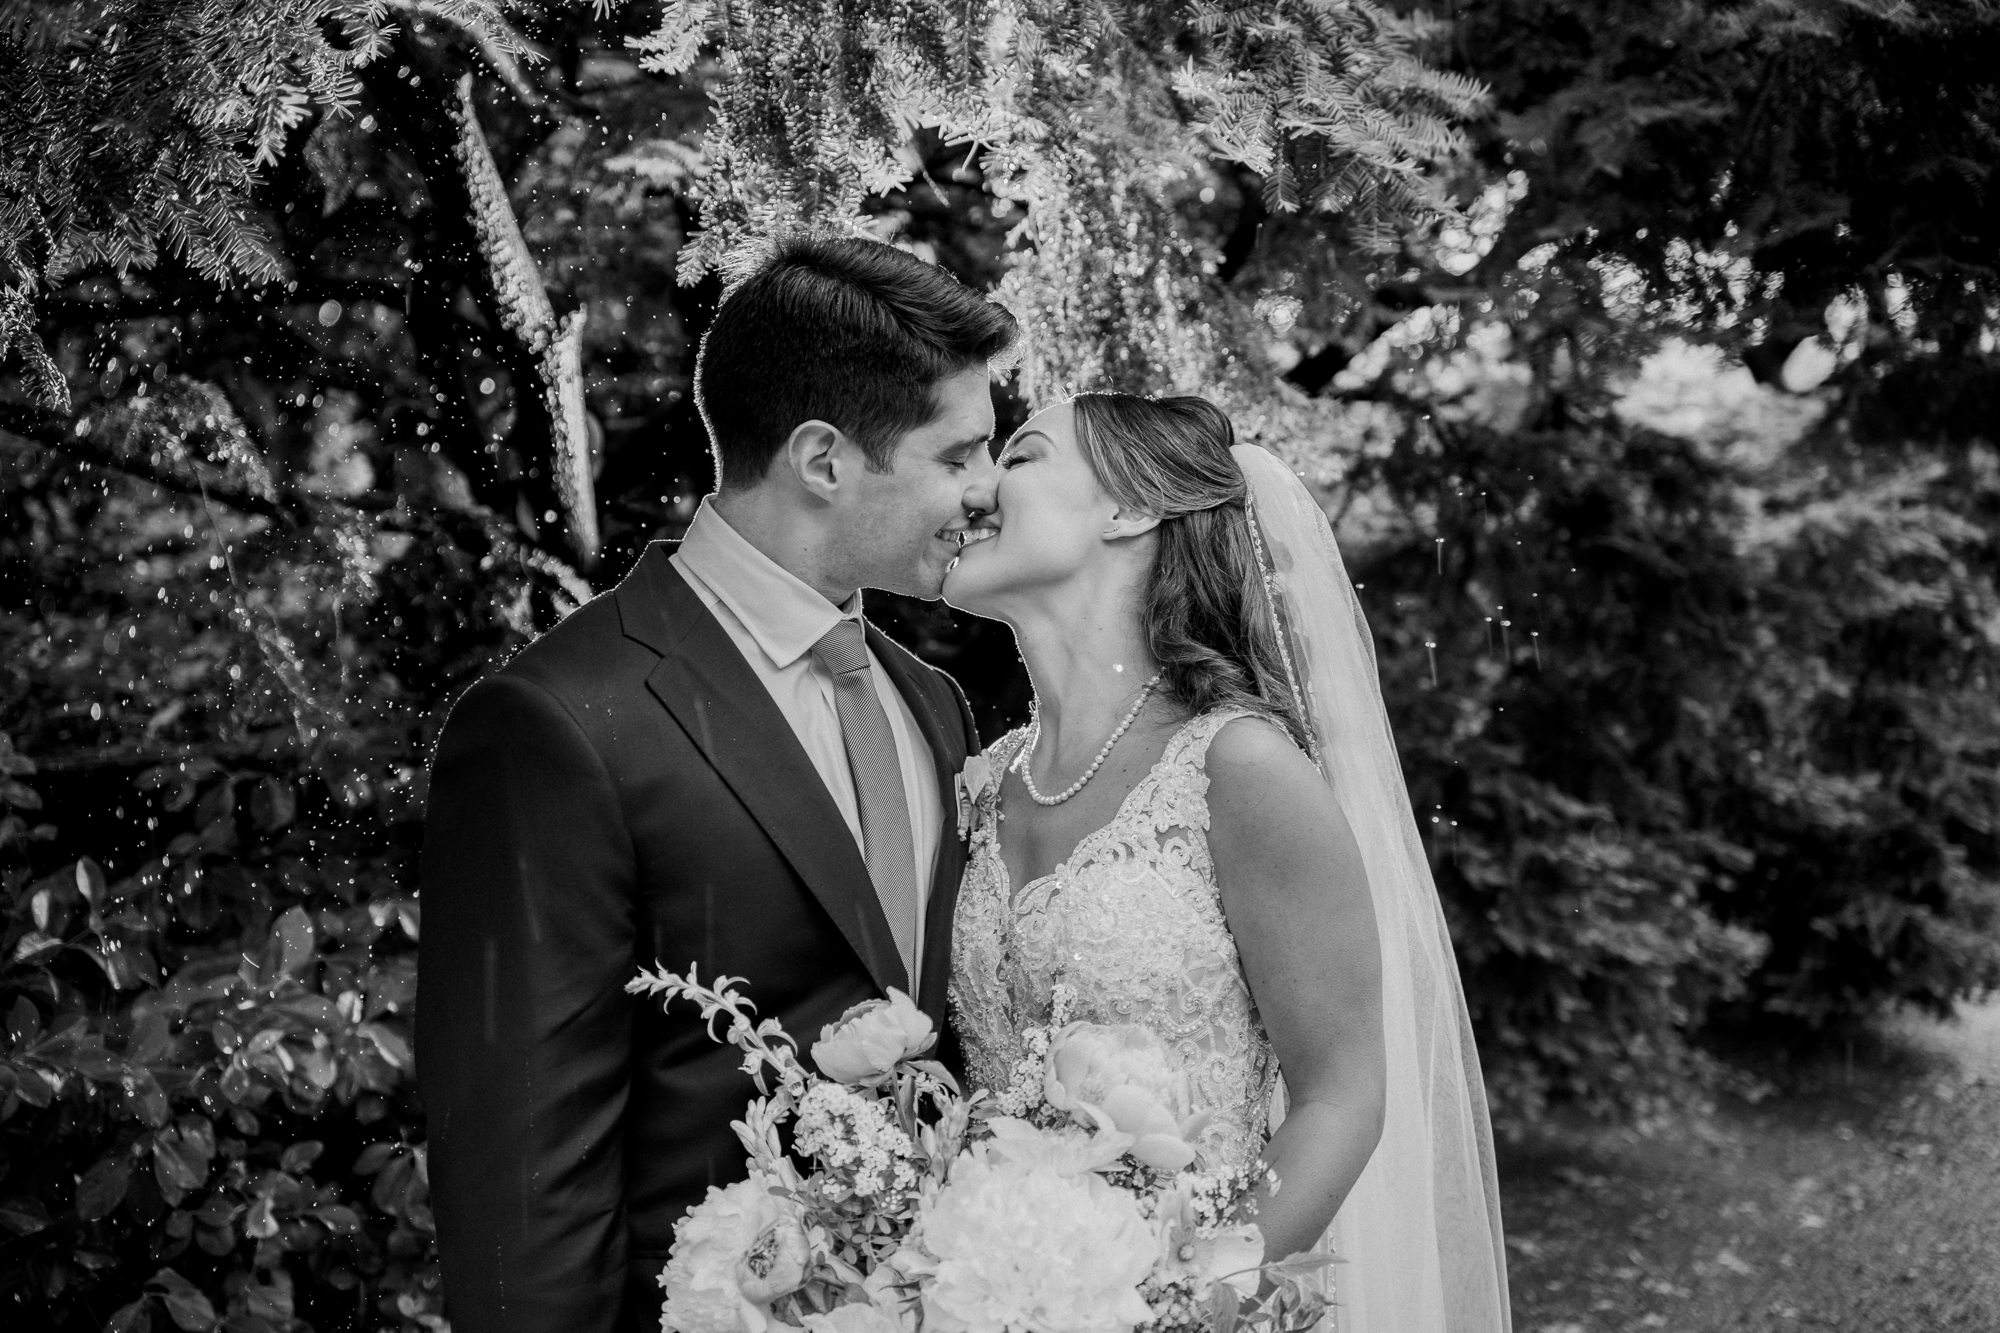 Breathtaking New York Wedding Photos in Conservatory Garden